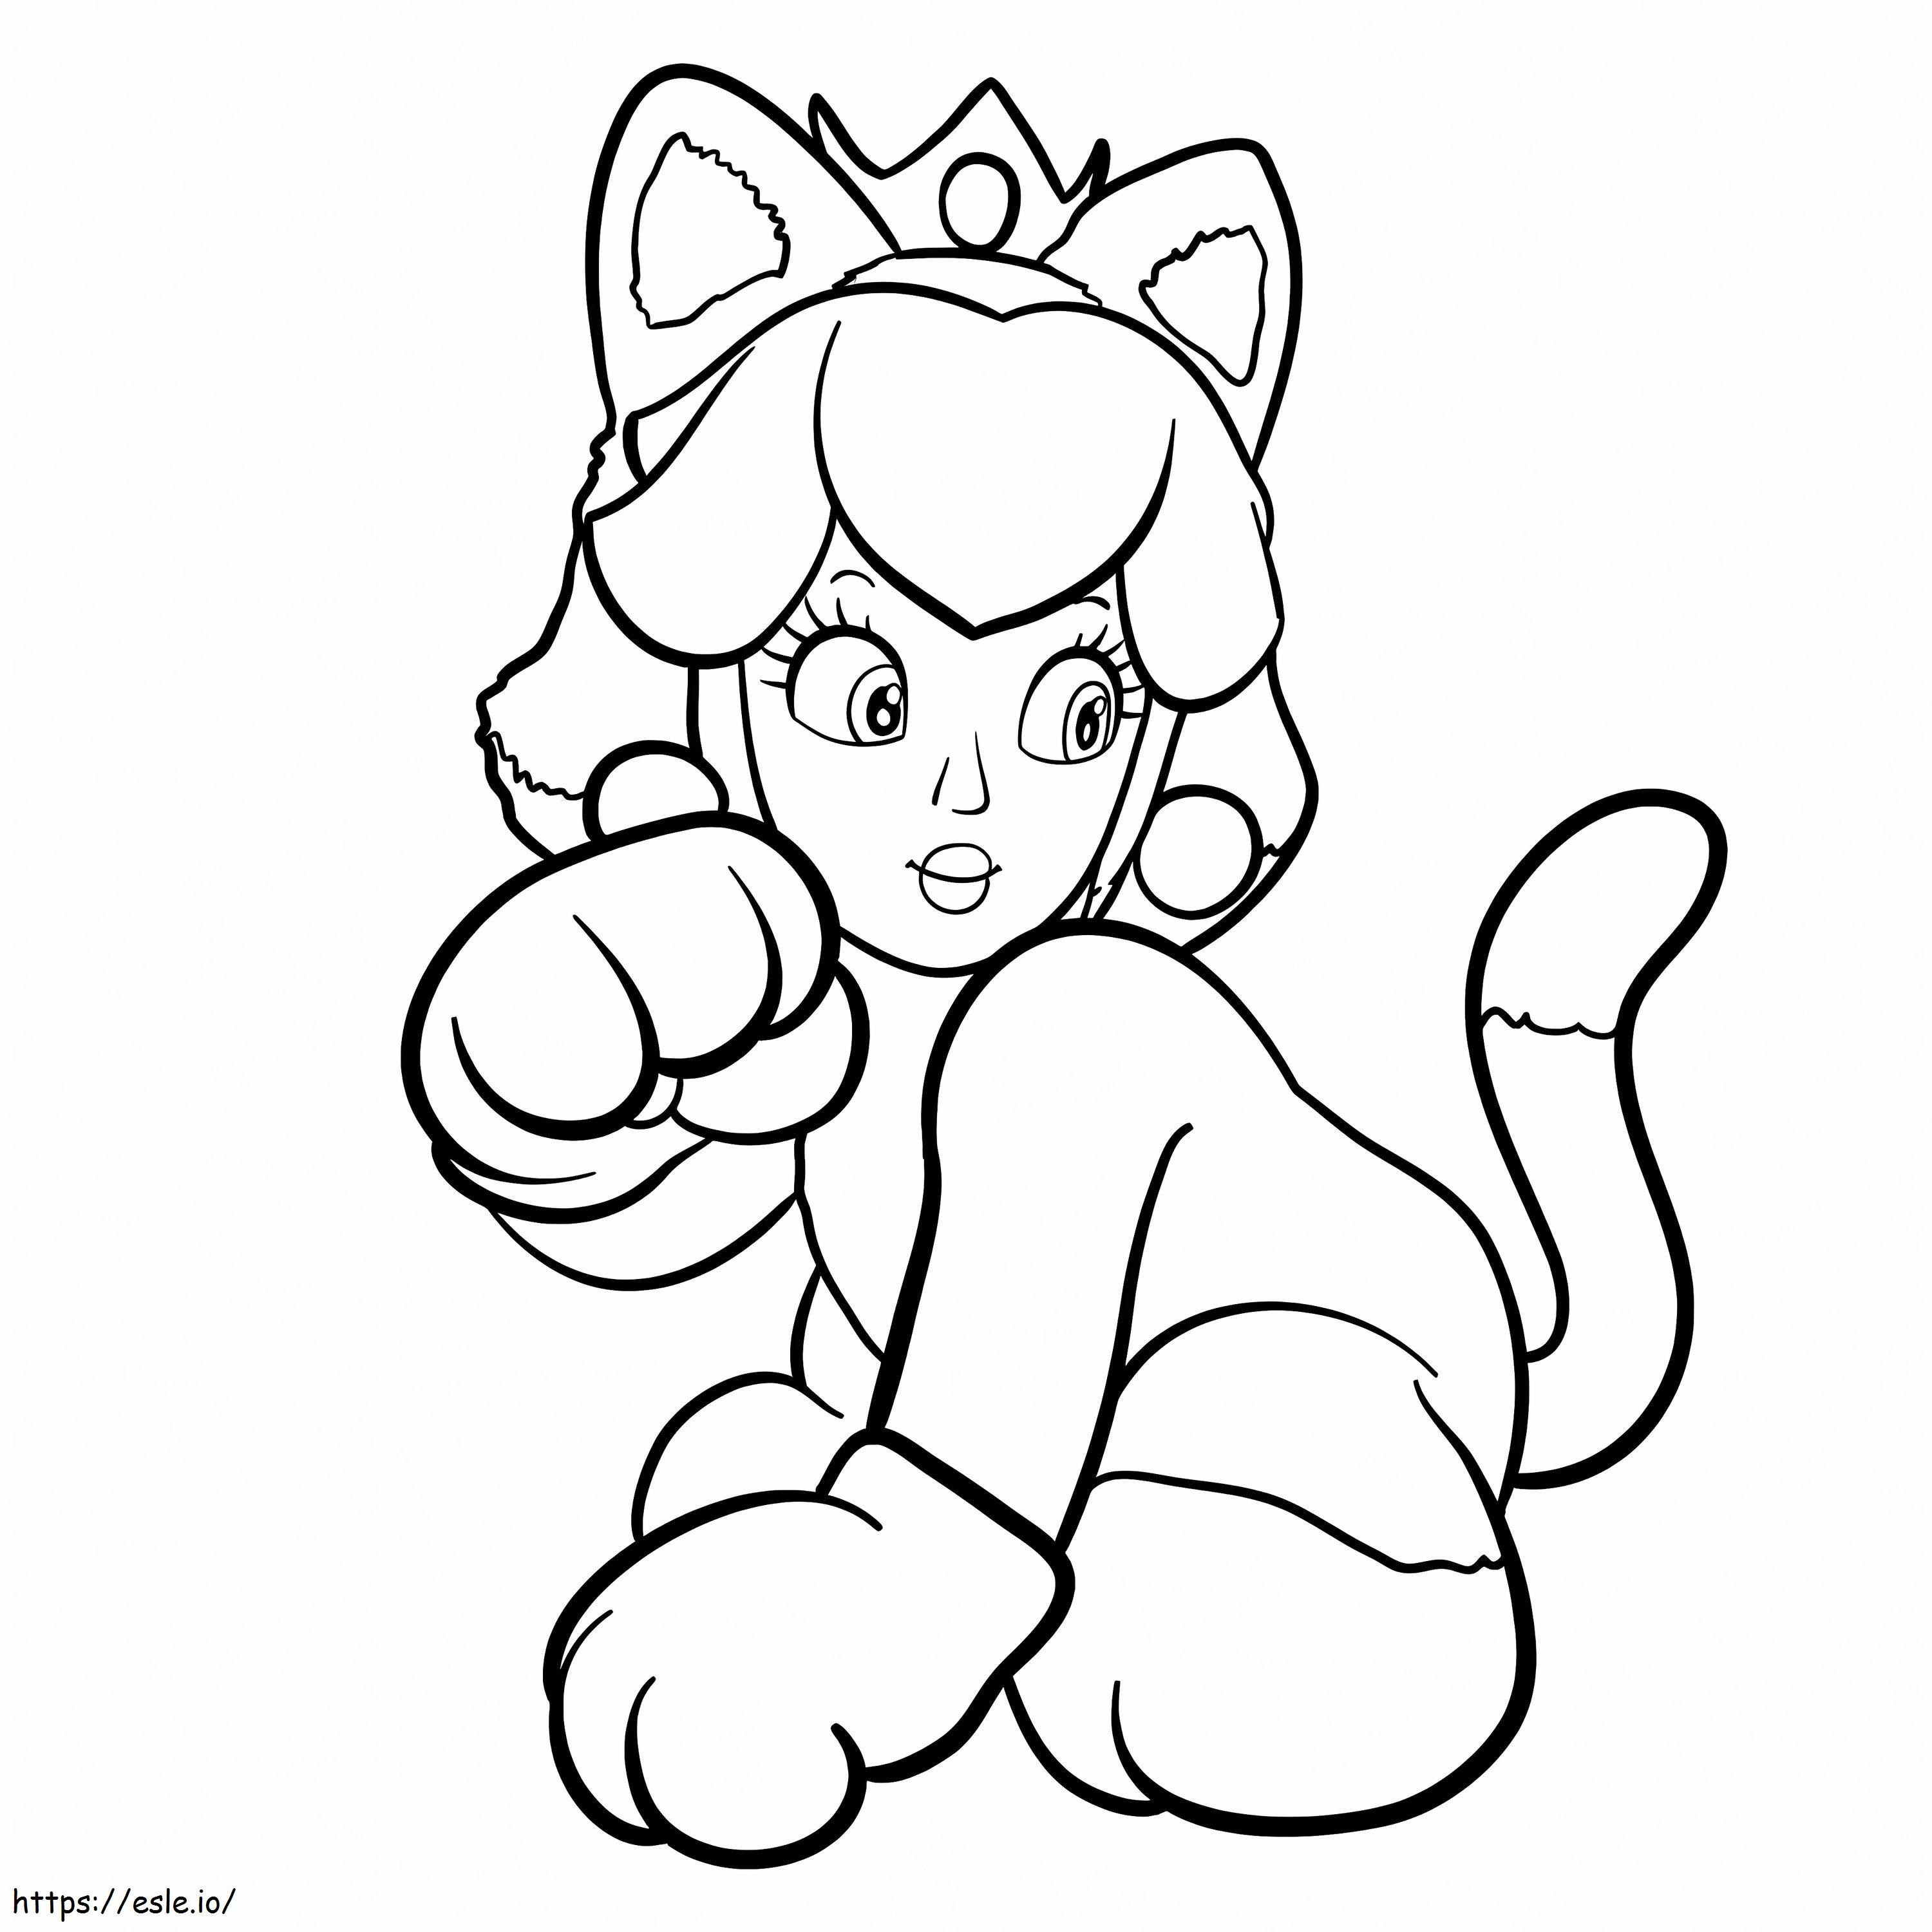 La principessa Peach in costume da gatto da colorare